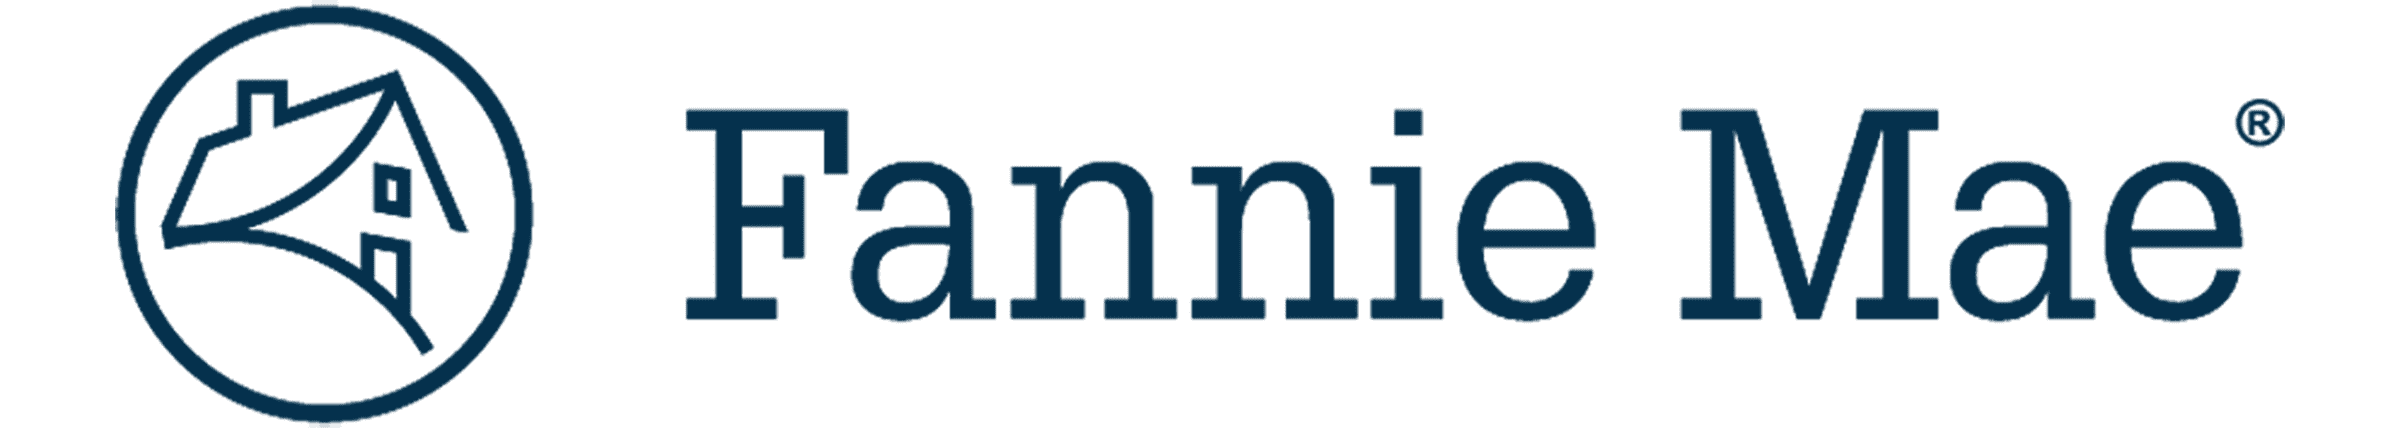 Fannie-Mae-Logo-New